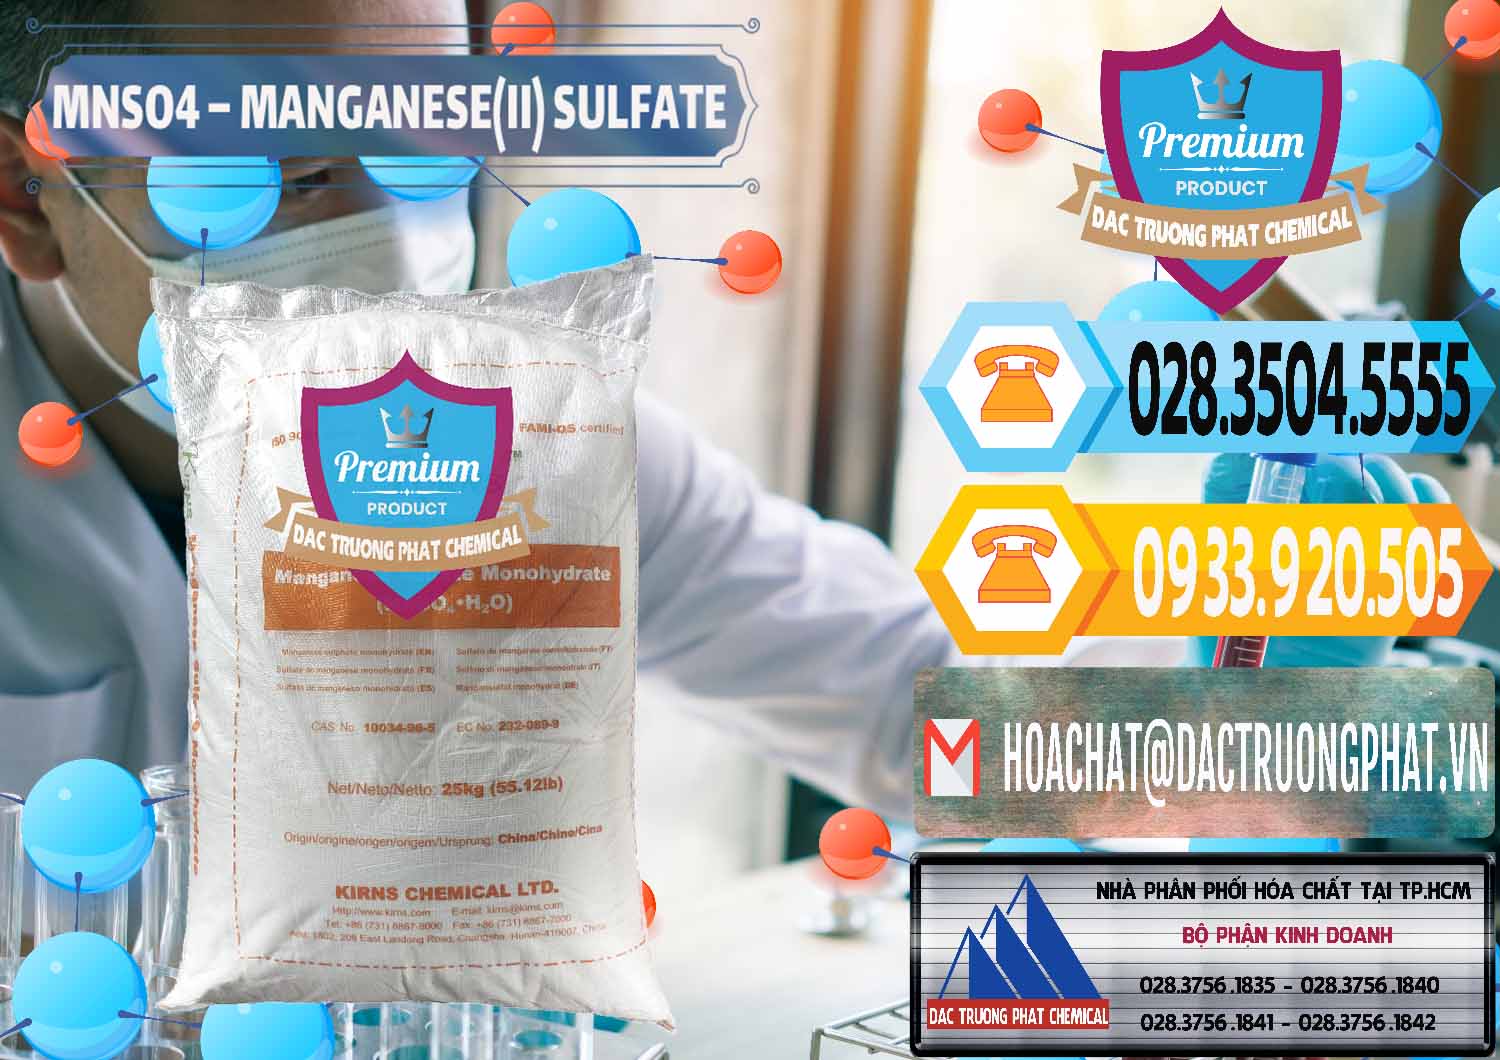 Cty chuyên kinh doanh - bán MNSO4 – Manganese (II) Sulfate Kirns Trung Quốc China - 0095 - Nơi chuyên kinh doanh & cung cấp hóa chất tại TP.HCM - hoachattayrua.net